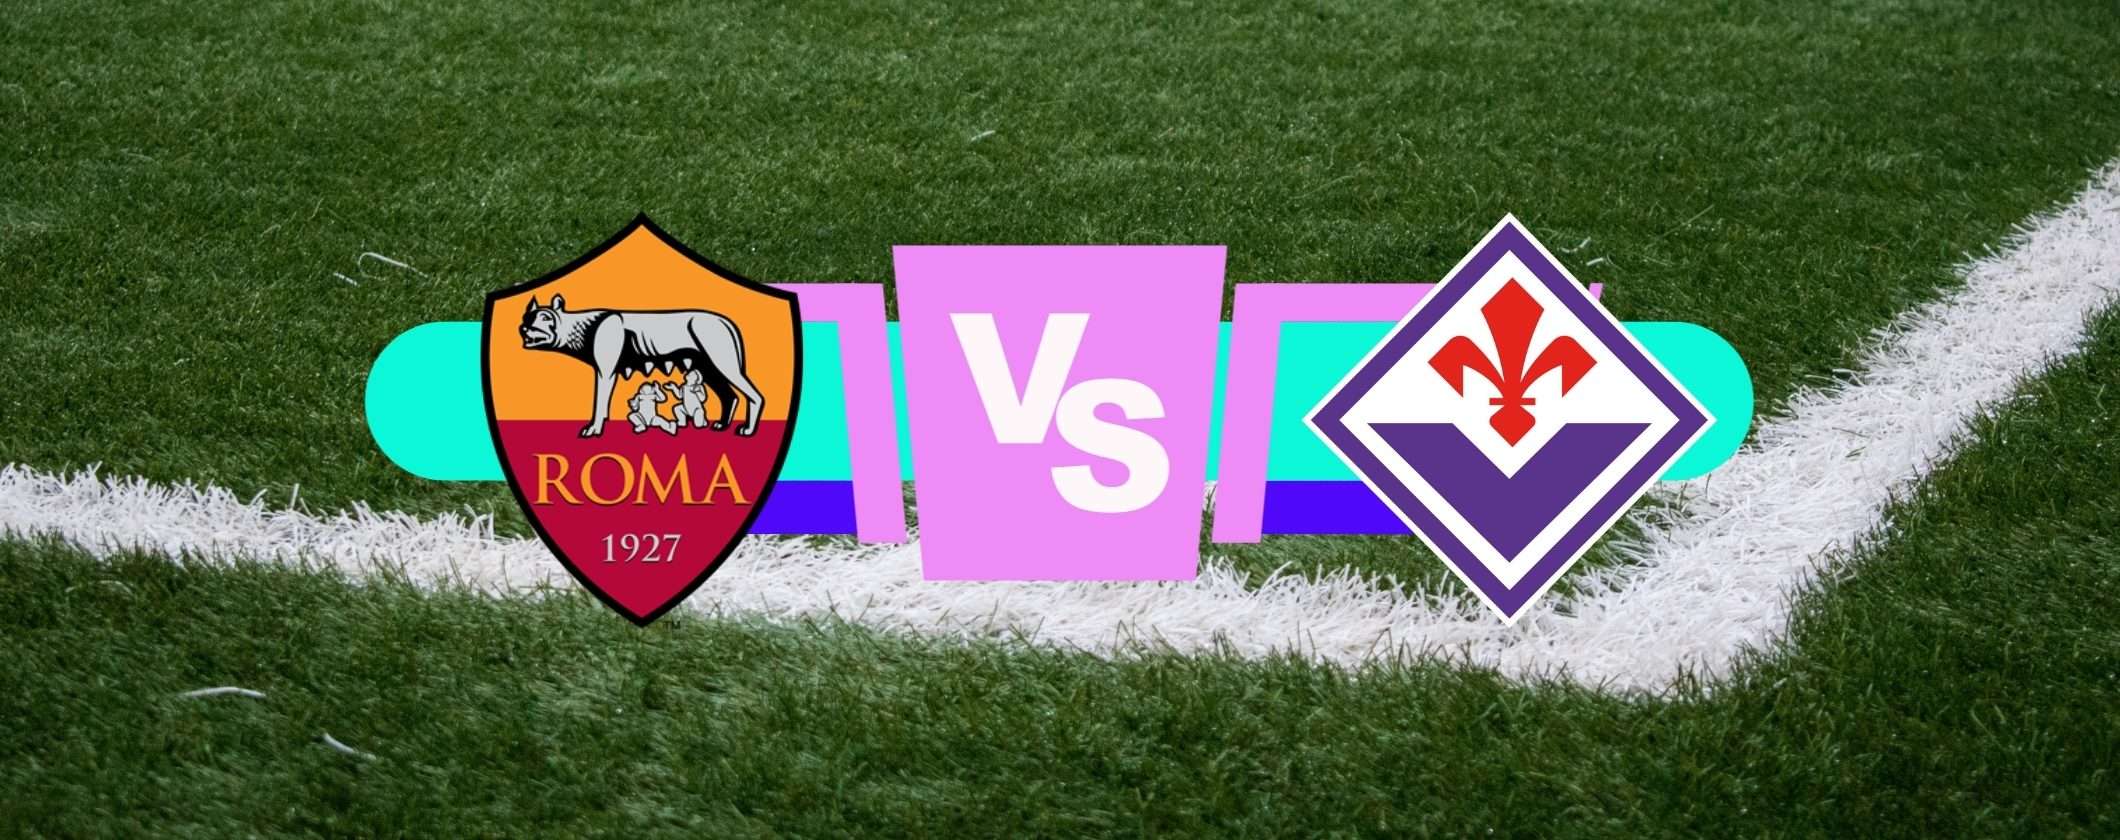 Roma-Fiorentina: come vederla in streaming dall'estero